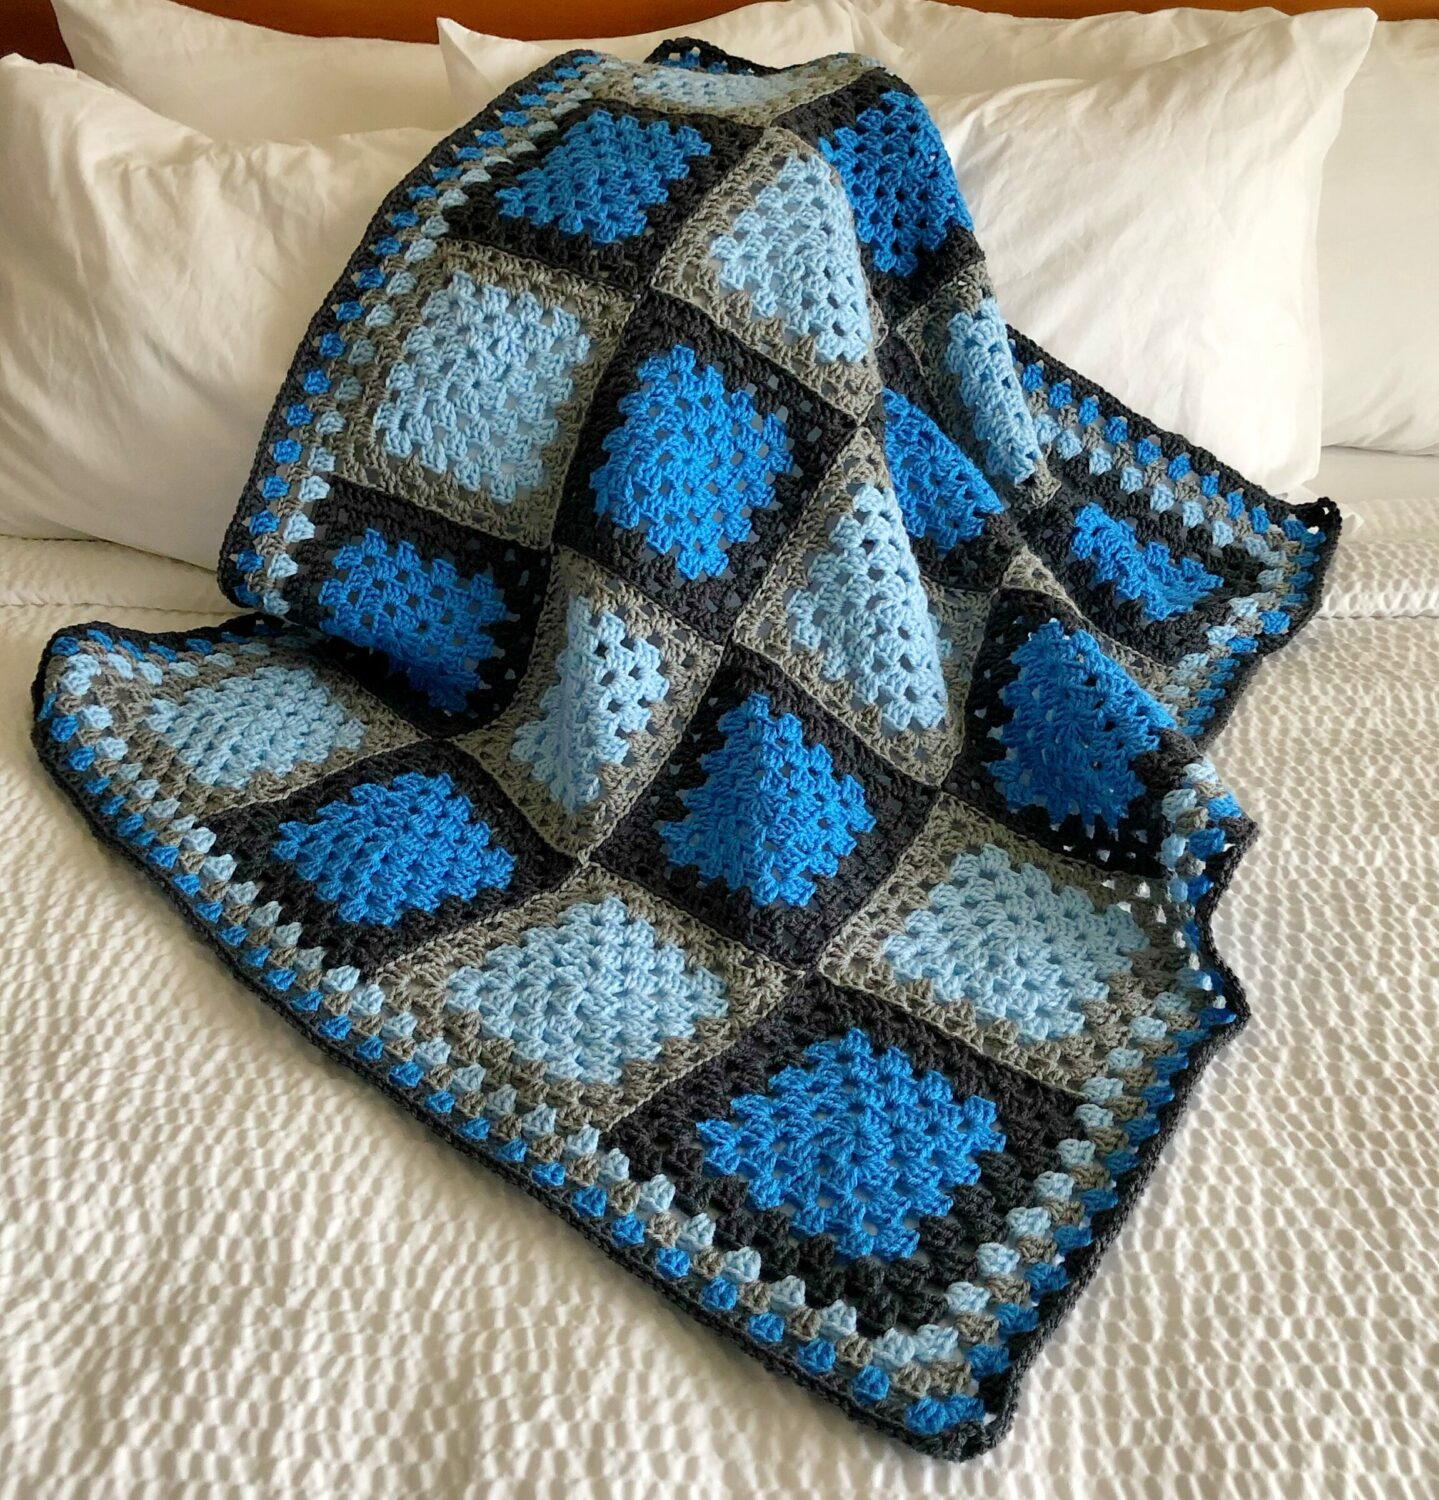 Blue Agate Granny Square Crochet Blanket | AllFreeCrochet.com